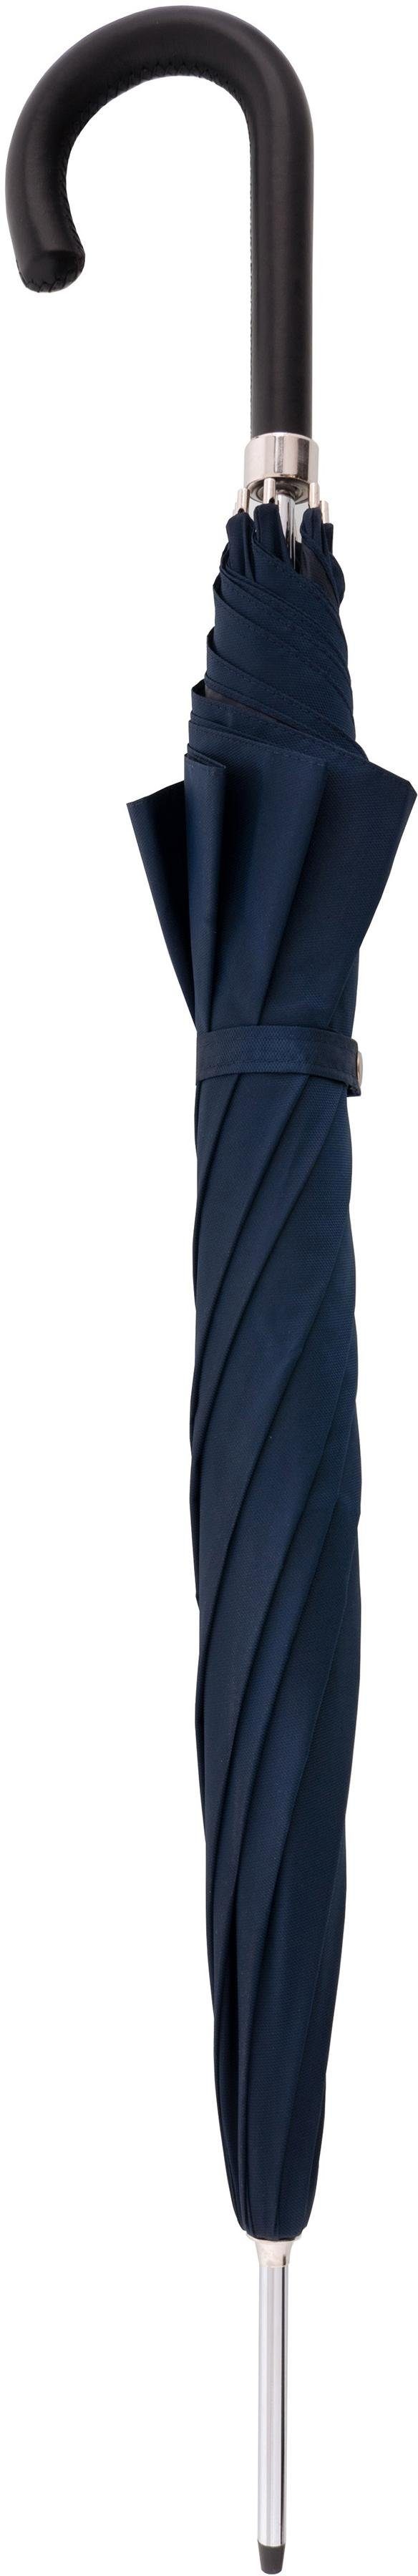 Damen Regenschirme doppler MANUFAKTUR Stockregenschirm Oxford Uni, blau, handgemachter Manufaktur-Stockschirm